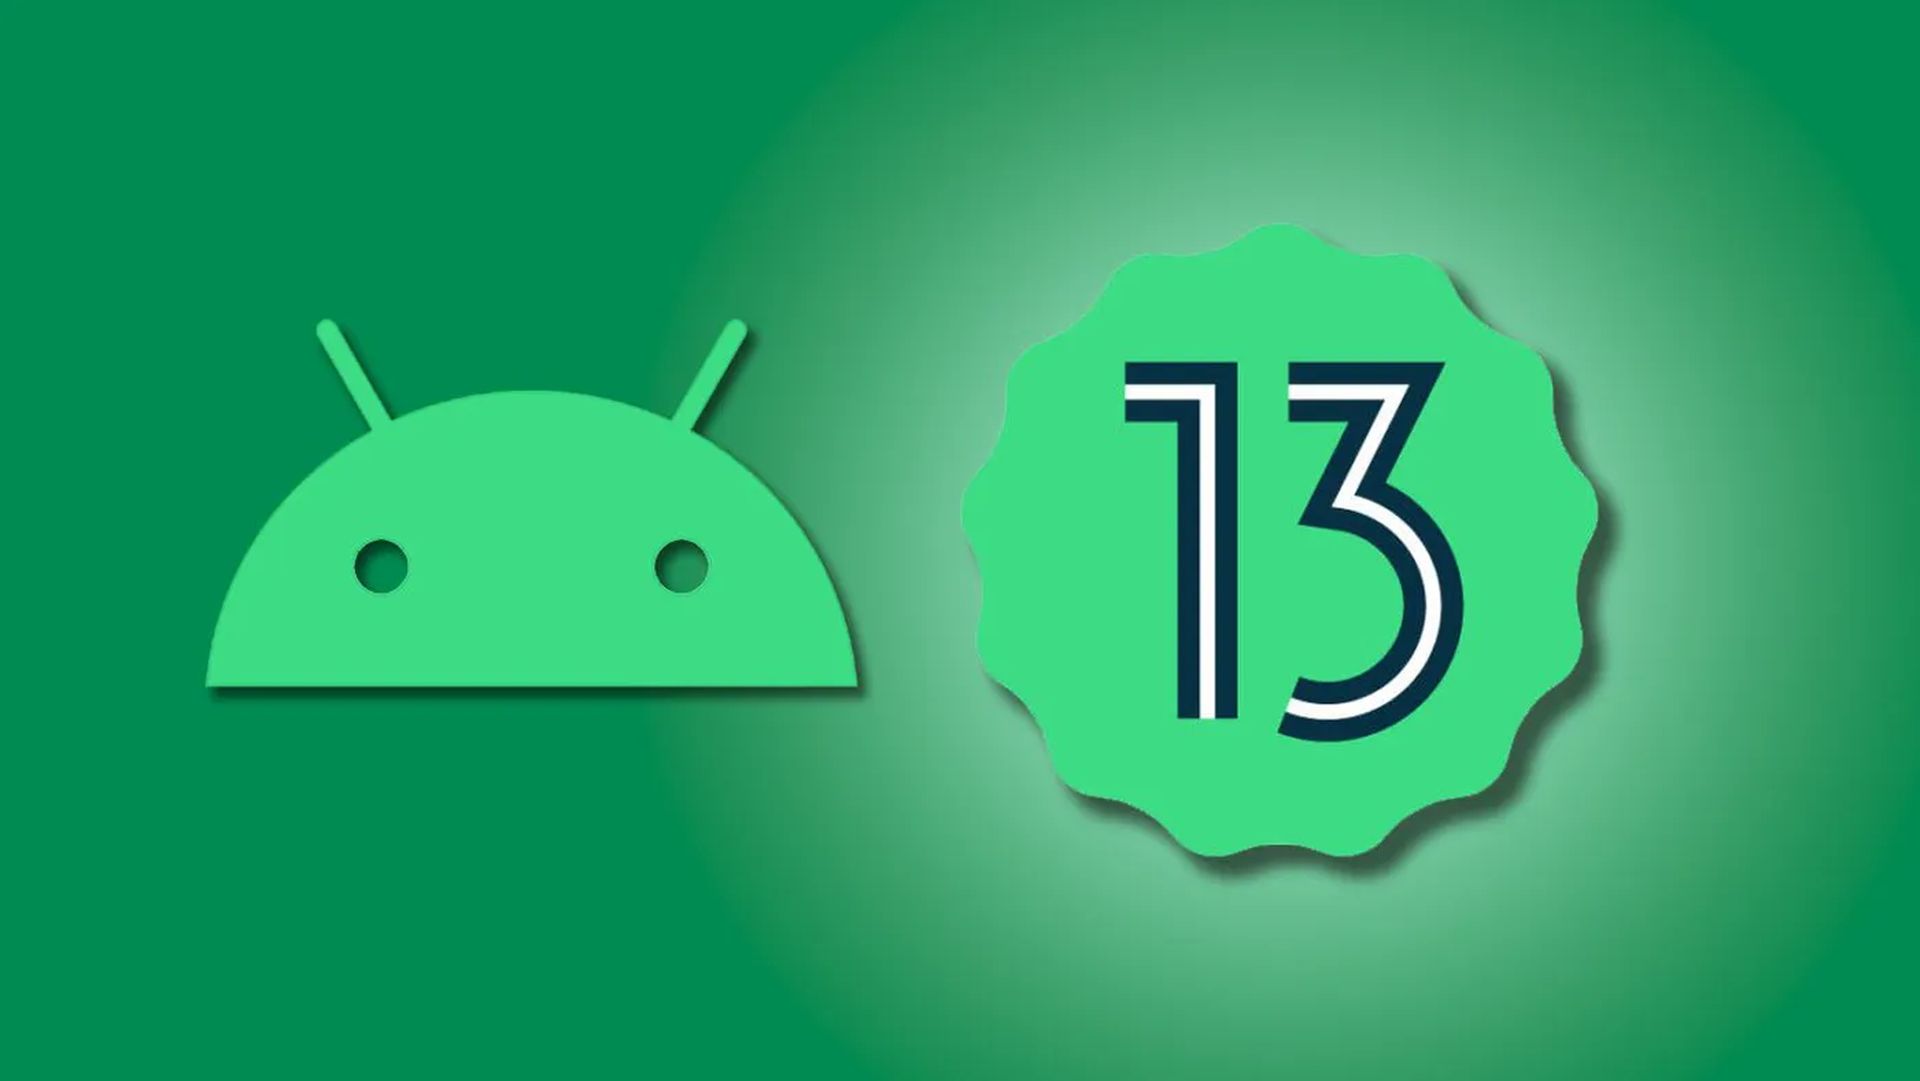 Yeni Android 13 özellikleri ve destekleyen cihazlar